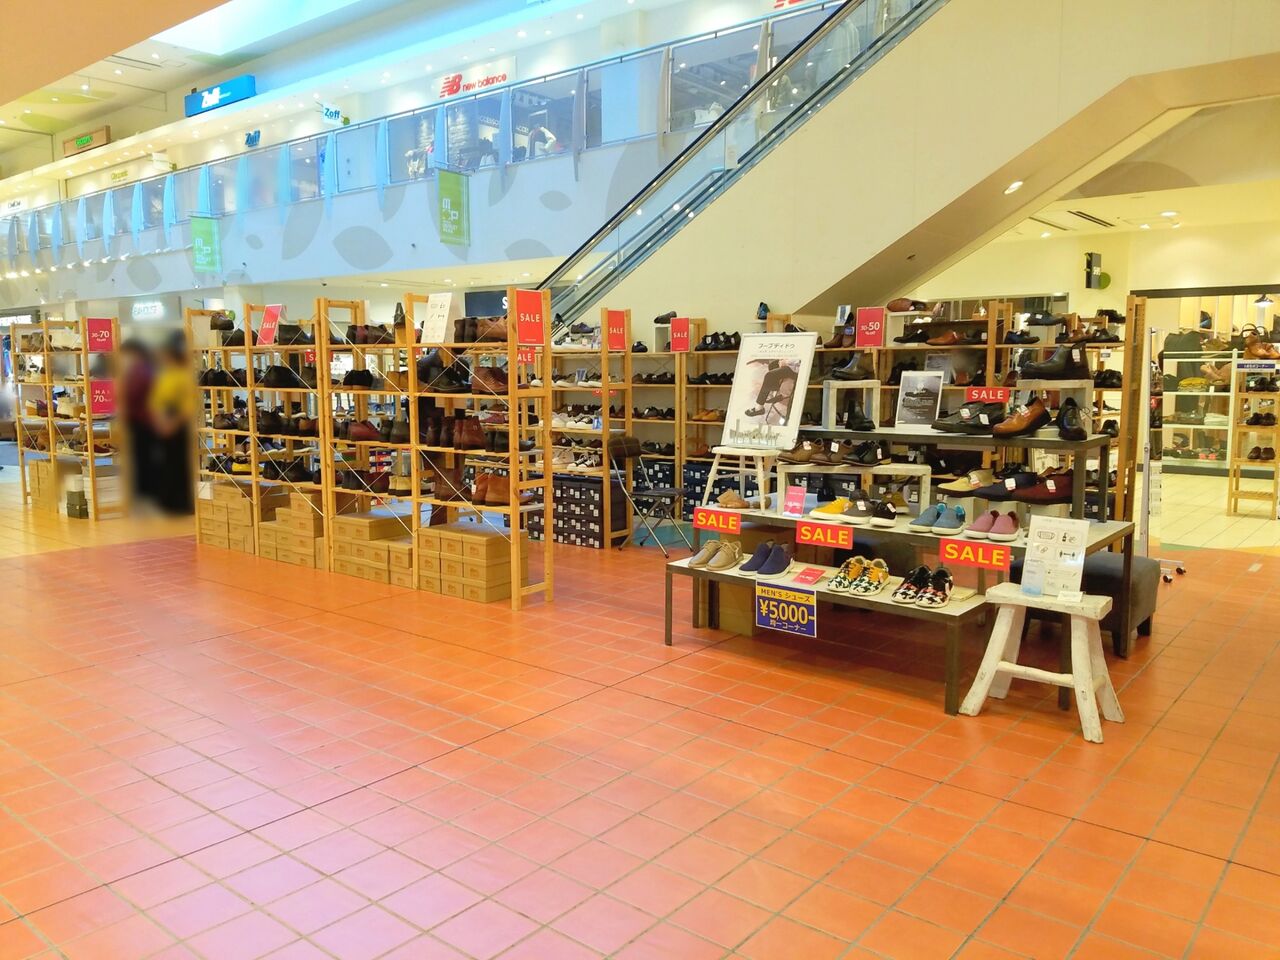 美浜区ひび野 アウトレット幕張 内に フープディドゥ なる靴屋さんが期間限定でオープンしてる 11月12日 1月18日 ちば通信 千葉県千葉市の地域情報サイト